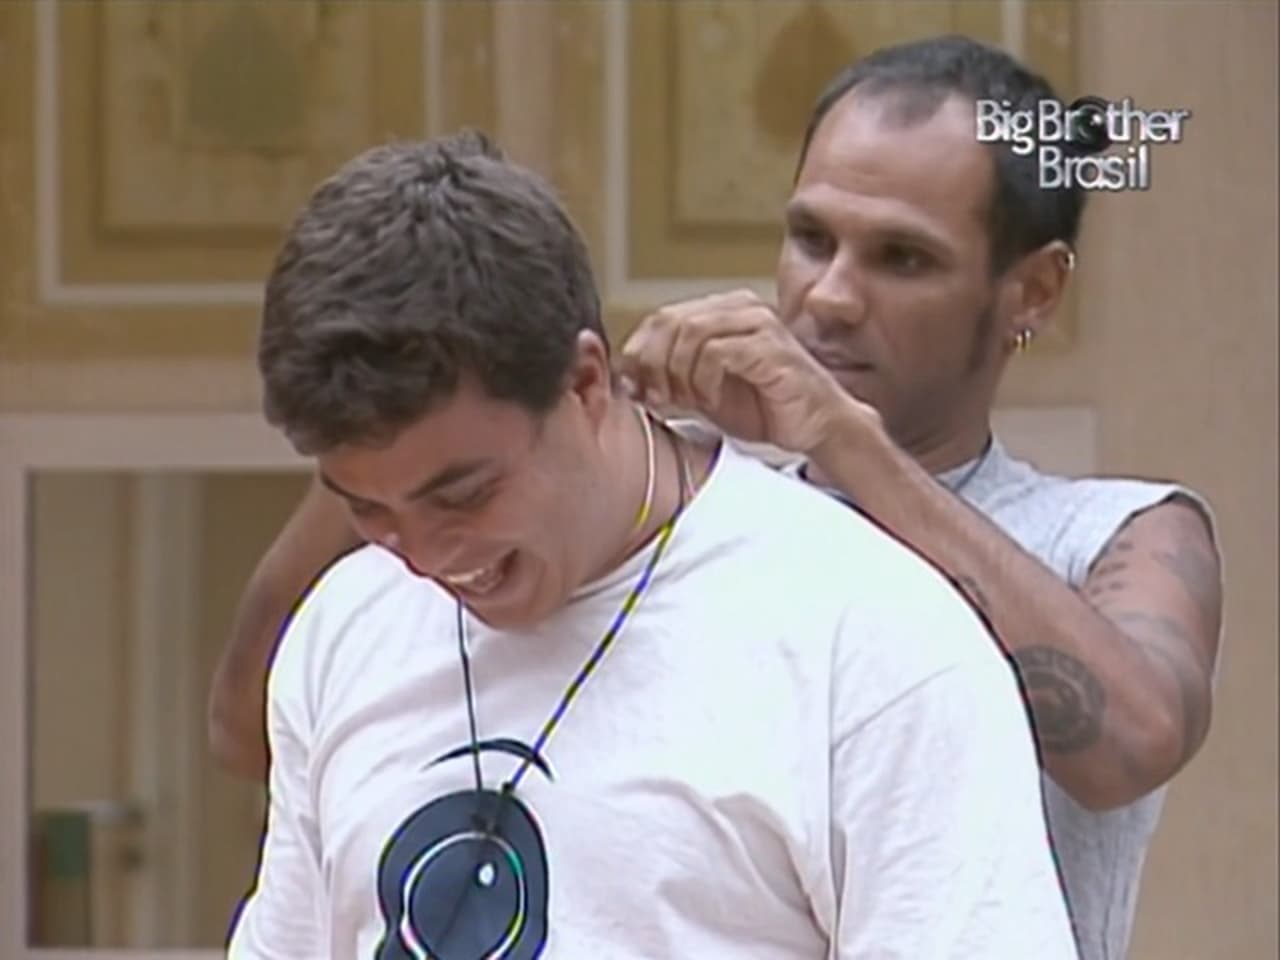 Big Brother Brasil - Season 3 Episode 32 : Episode 32